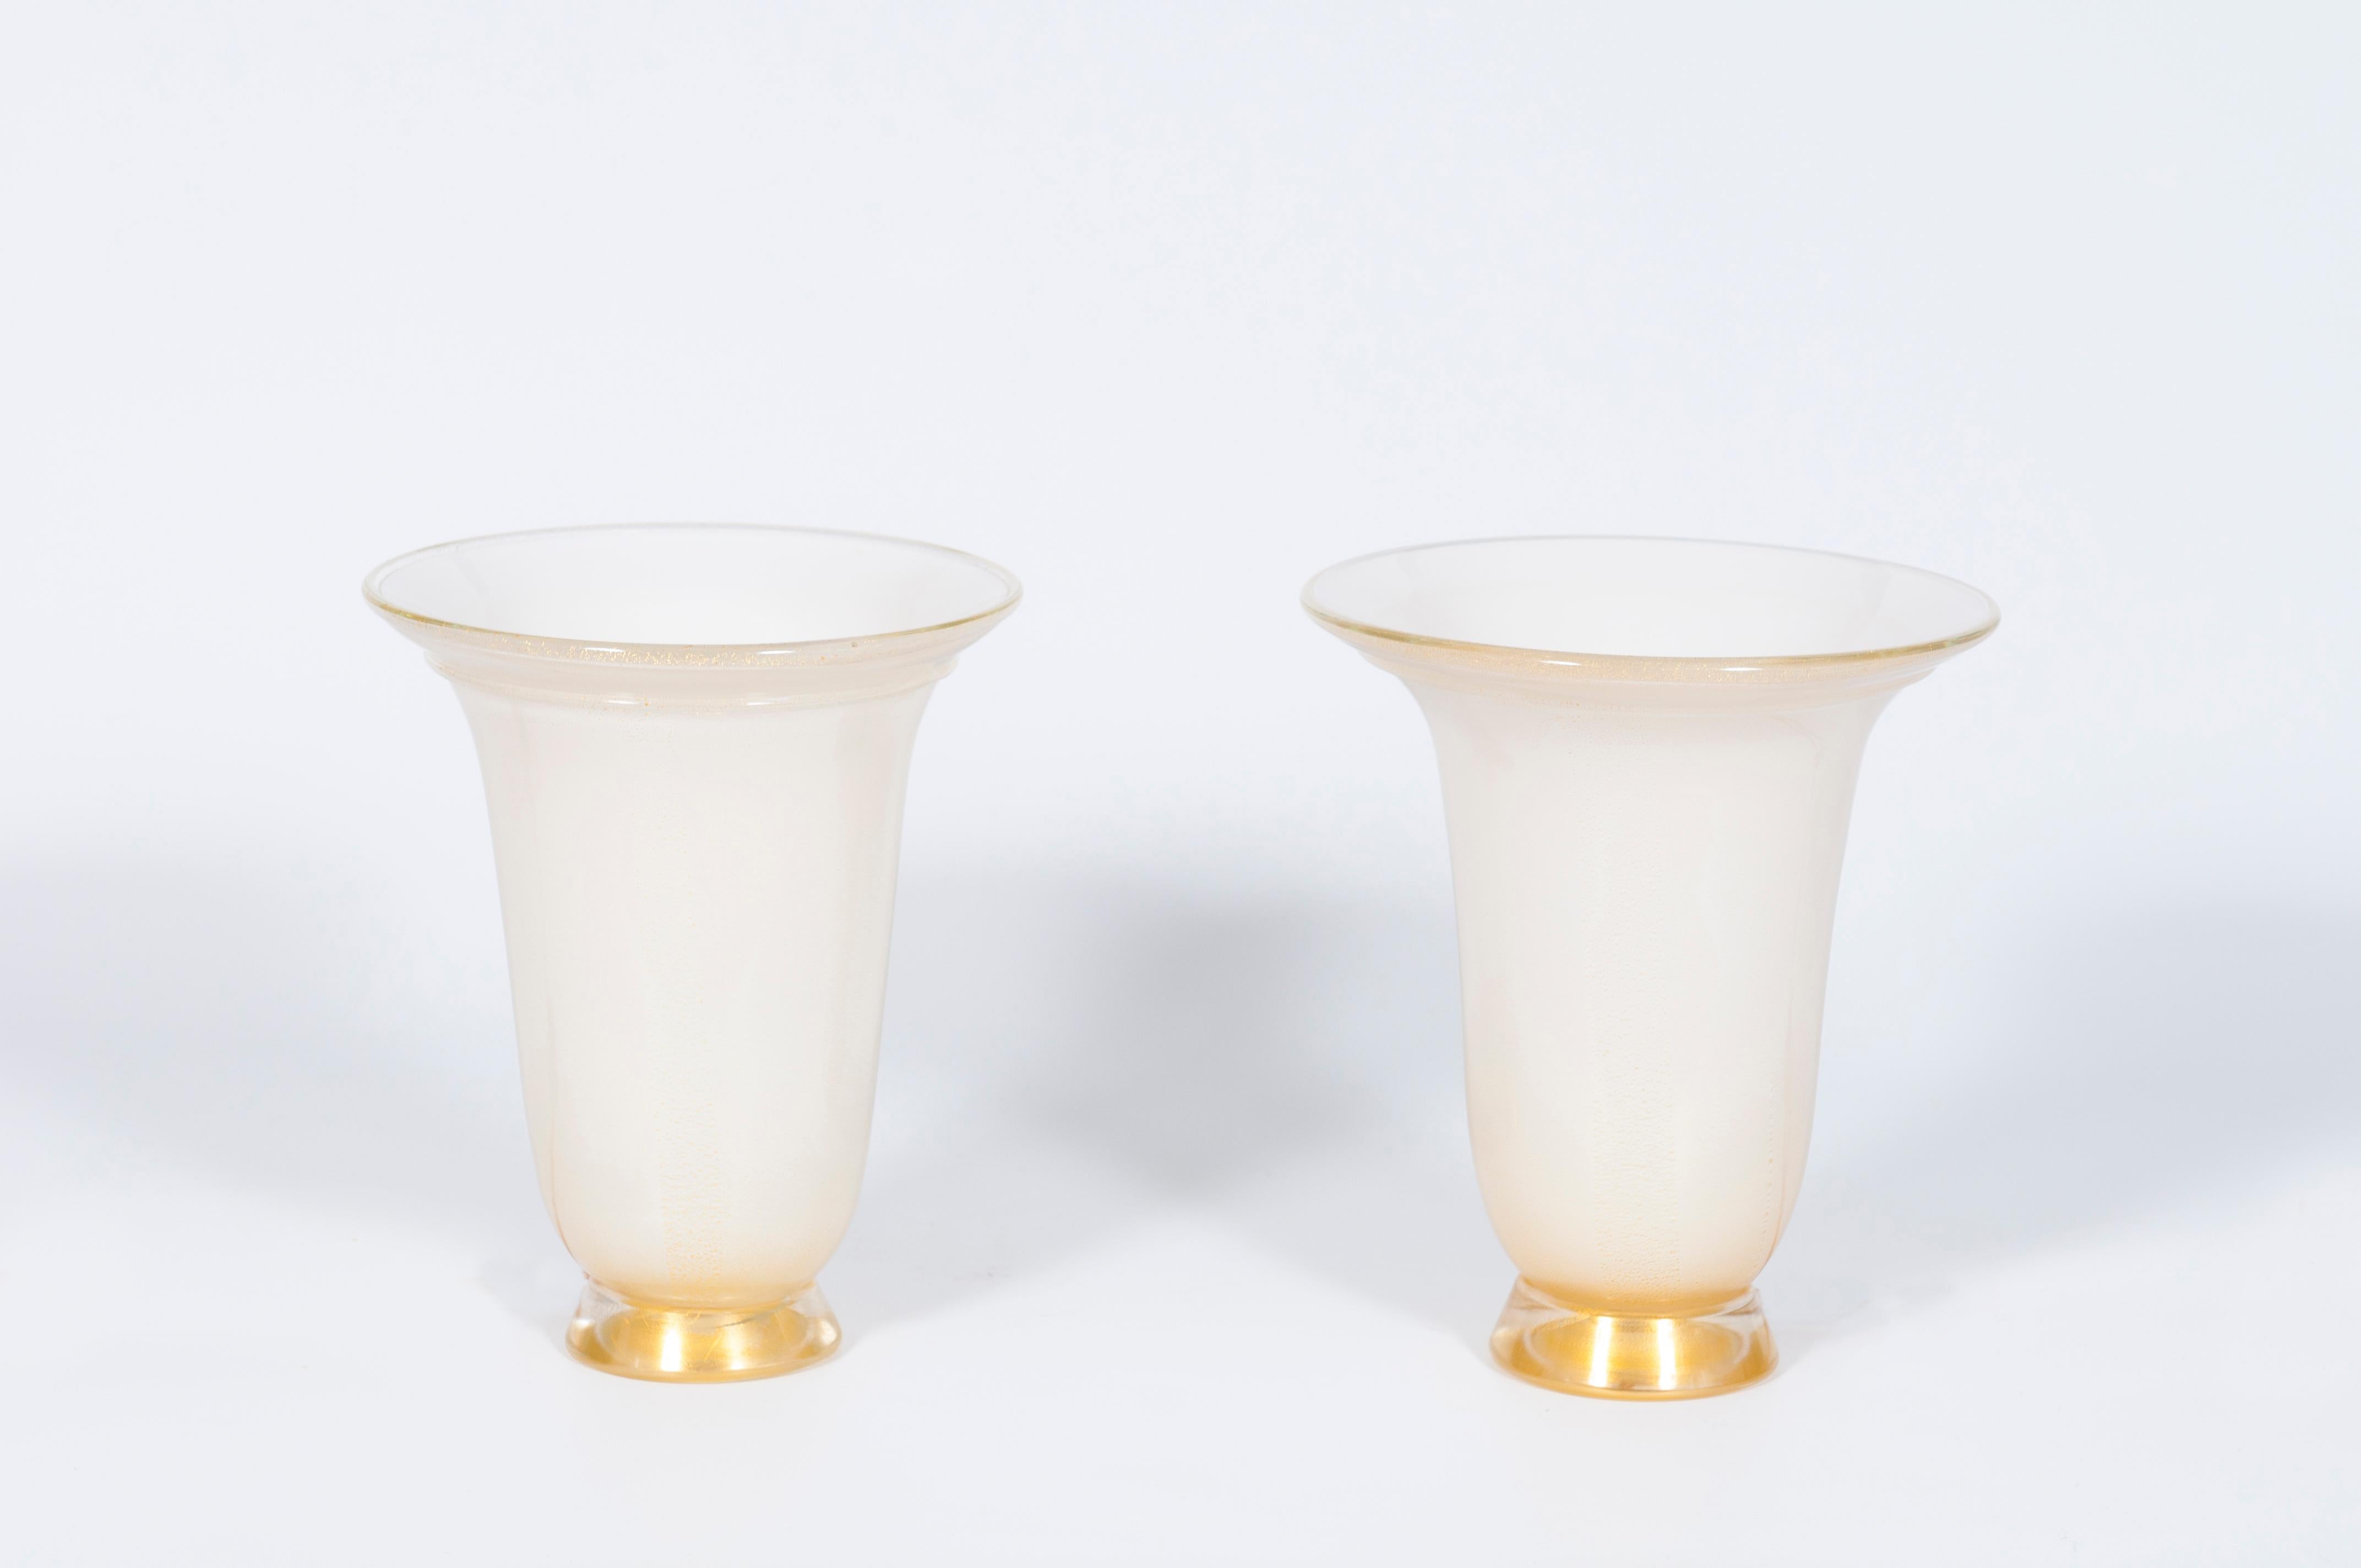 Paire de lampes de table en verre soufflé de Murano de style vénitien italien, blanc et or, attribuées à Barovier, années 1980.
Il s'agit d'un ensemble unique de lampes de table en verre de Murano soufflé à la main en forme de vase, de couleur